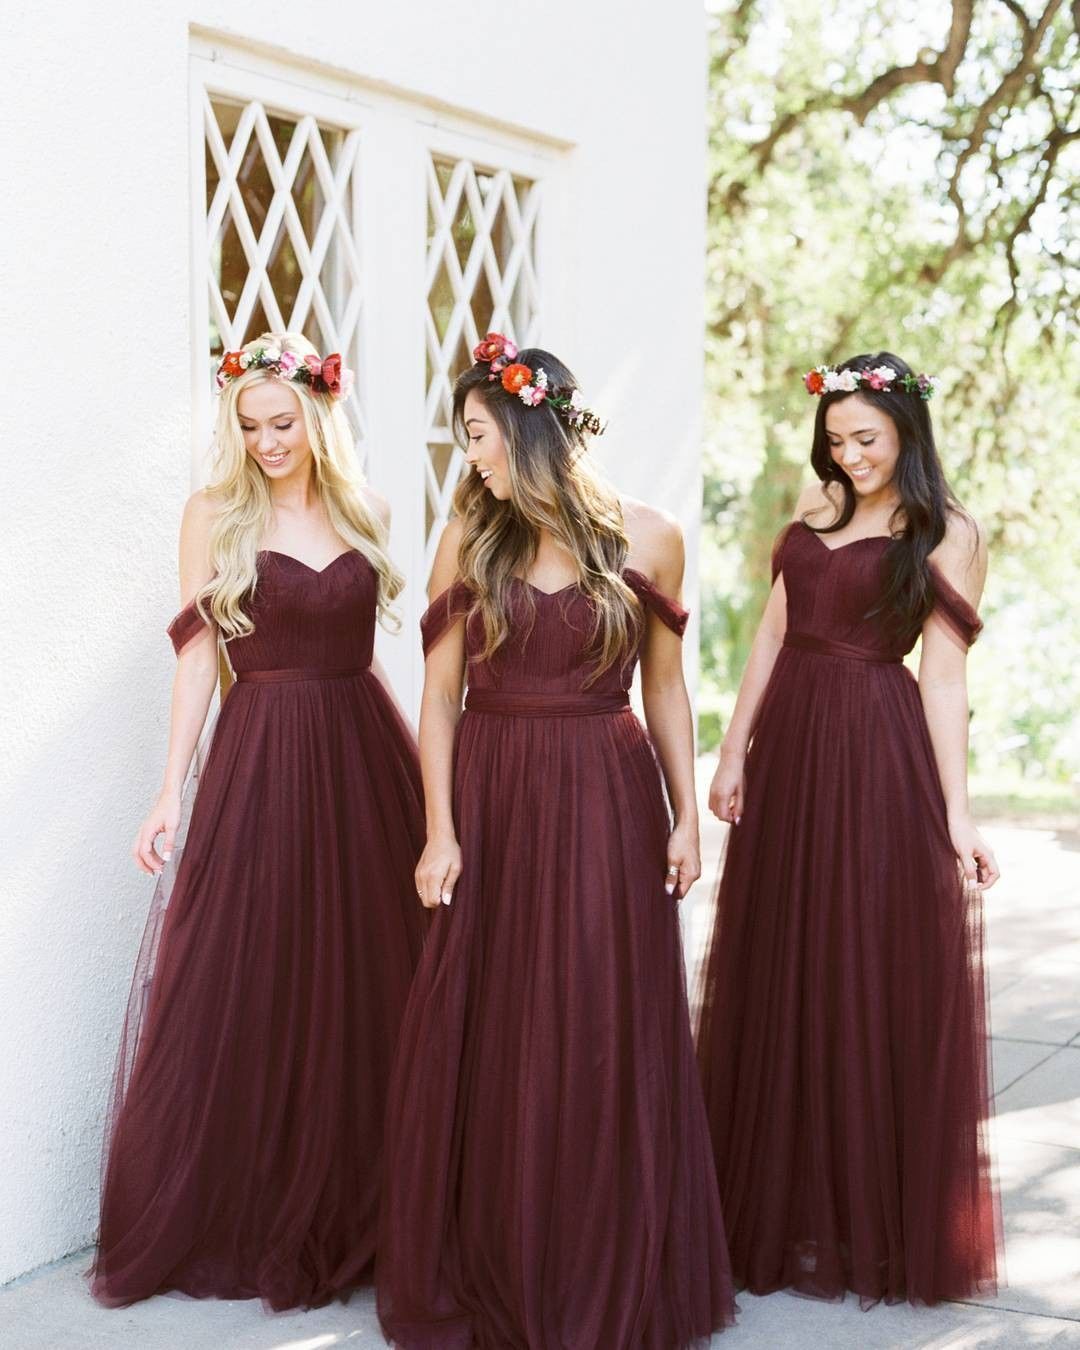 Inspirasi Warna Dan Desain Gaun Untuk Bridesmaids